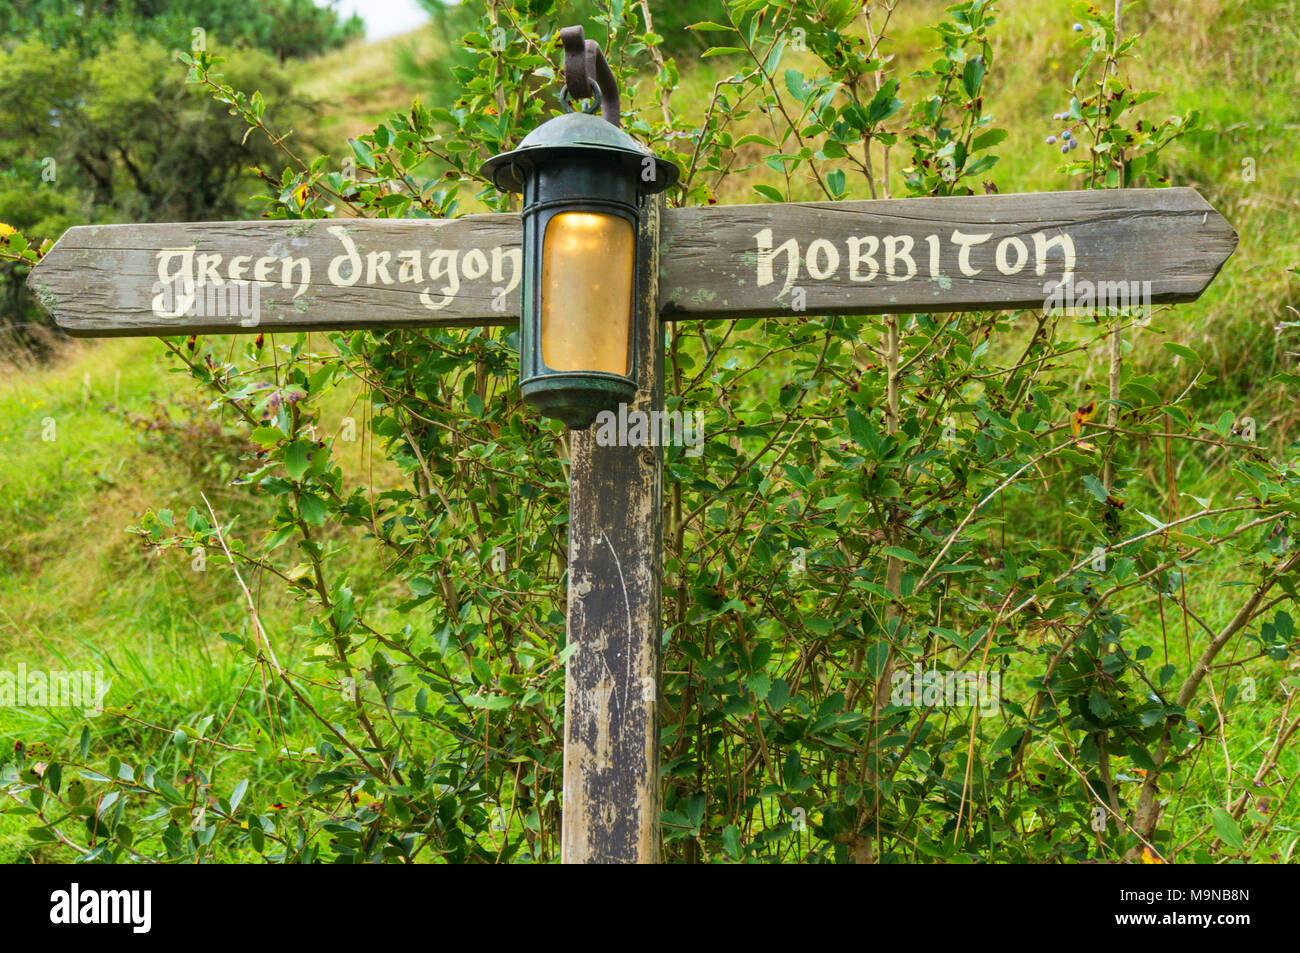 Nuova Zelanda Hobbiton Nuova Zelanda Matamata Hobbiton set cinematografico fictional del villaggio di Hobbiton in shire da The Hobbit e Il signore degli anelli bookssign Foto Stock